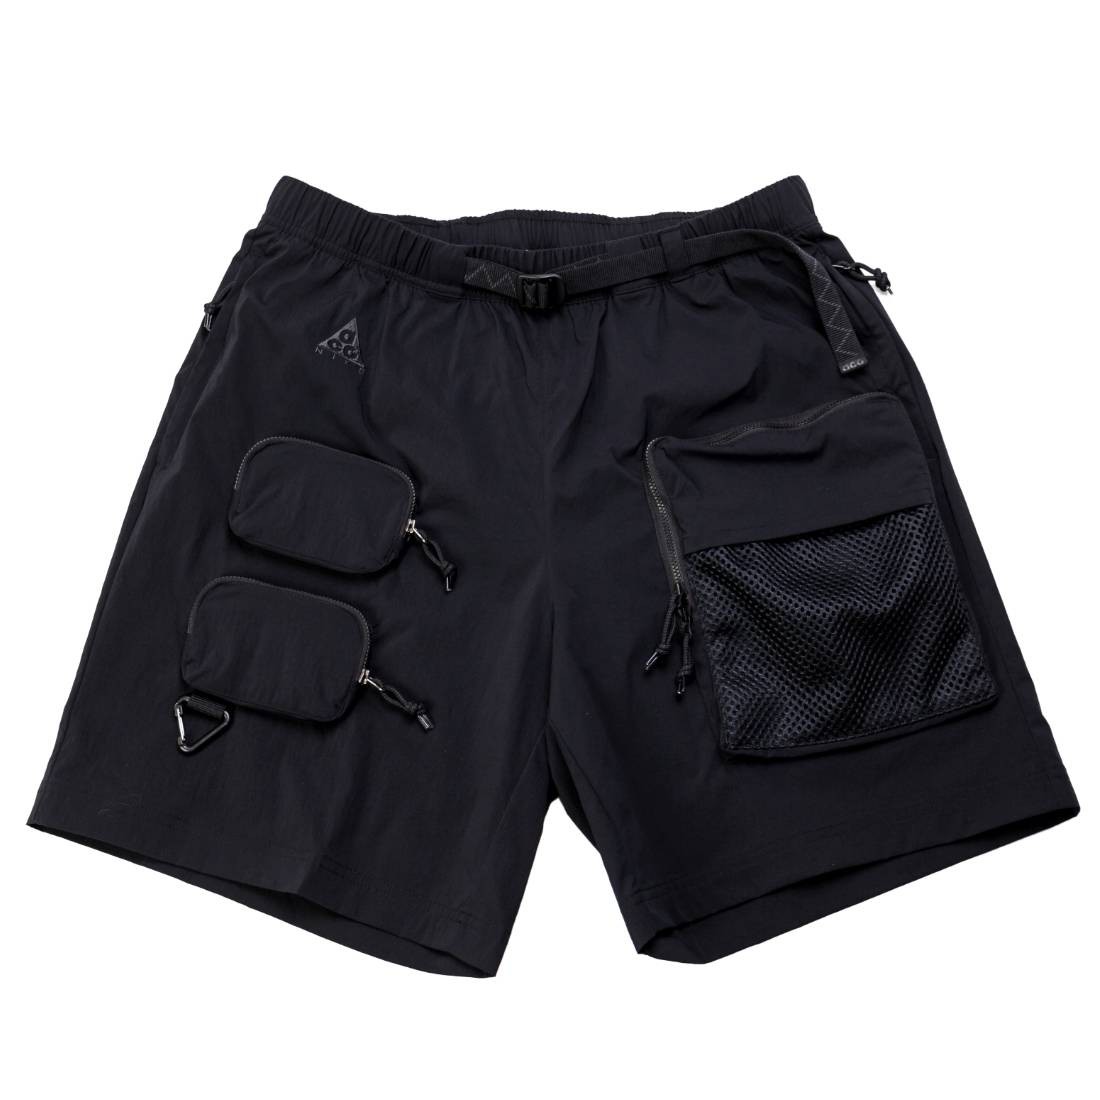 nike cargo shorts black